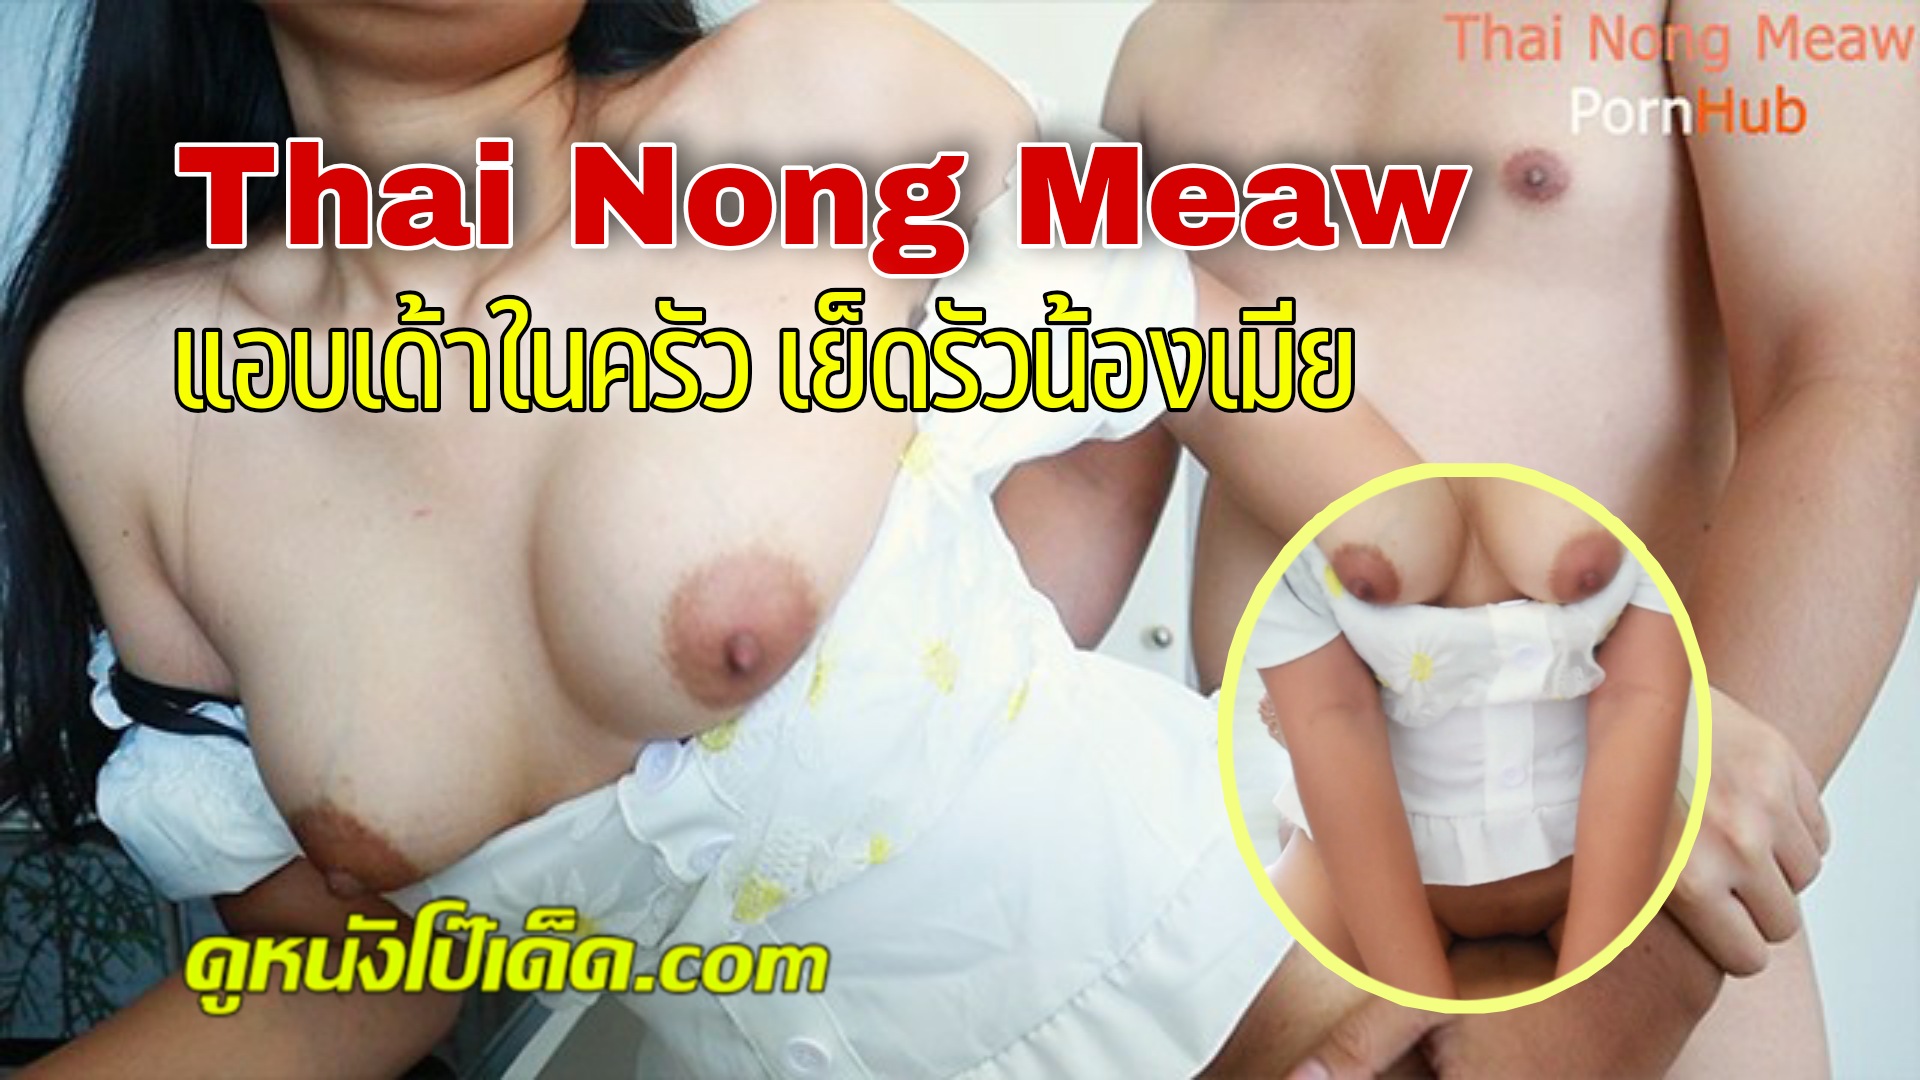 Tajski nong meaw ❤️ Darmowe obrazy porno